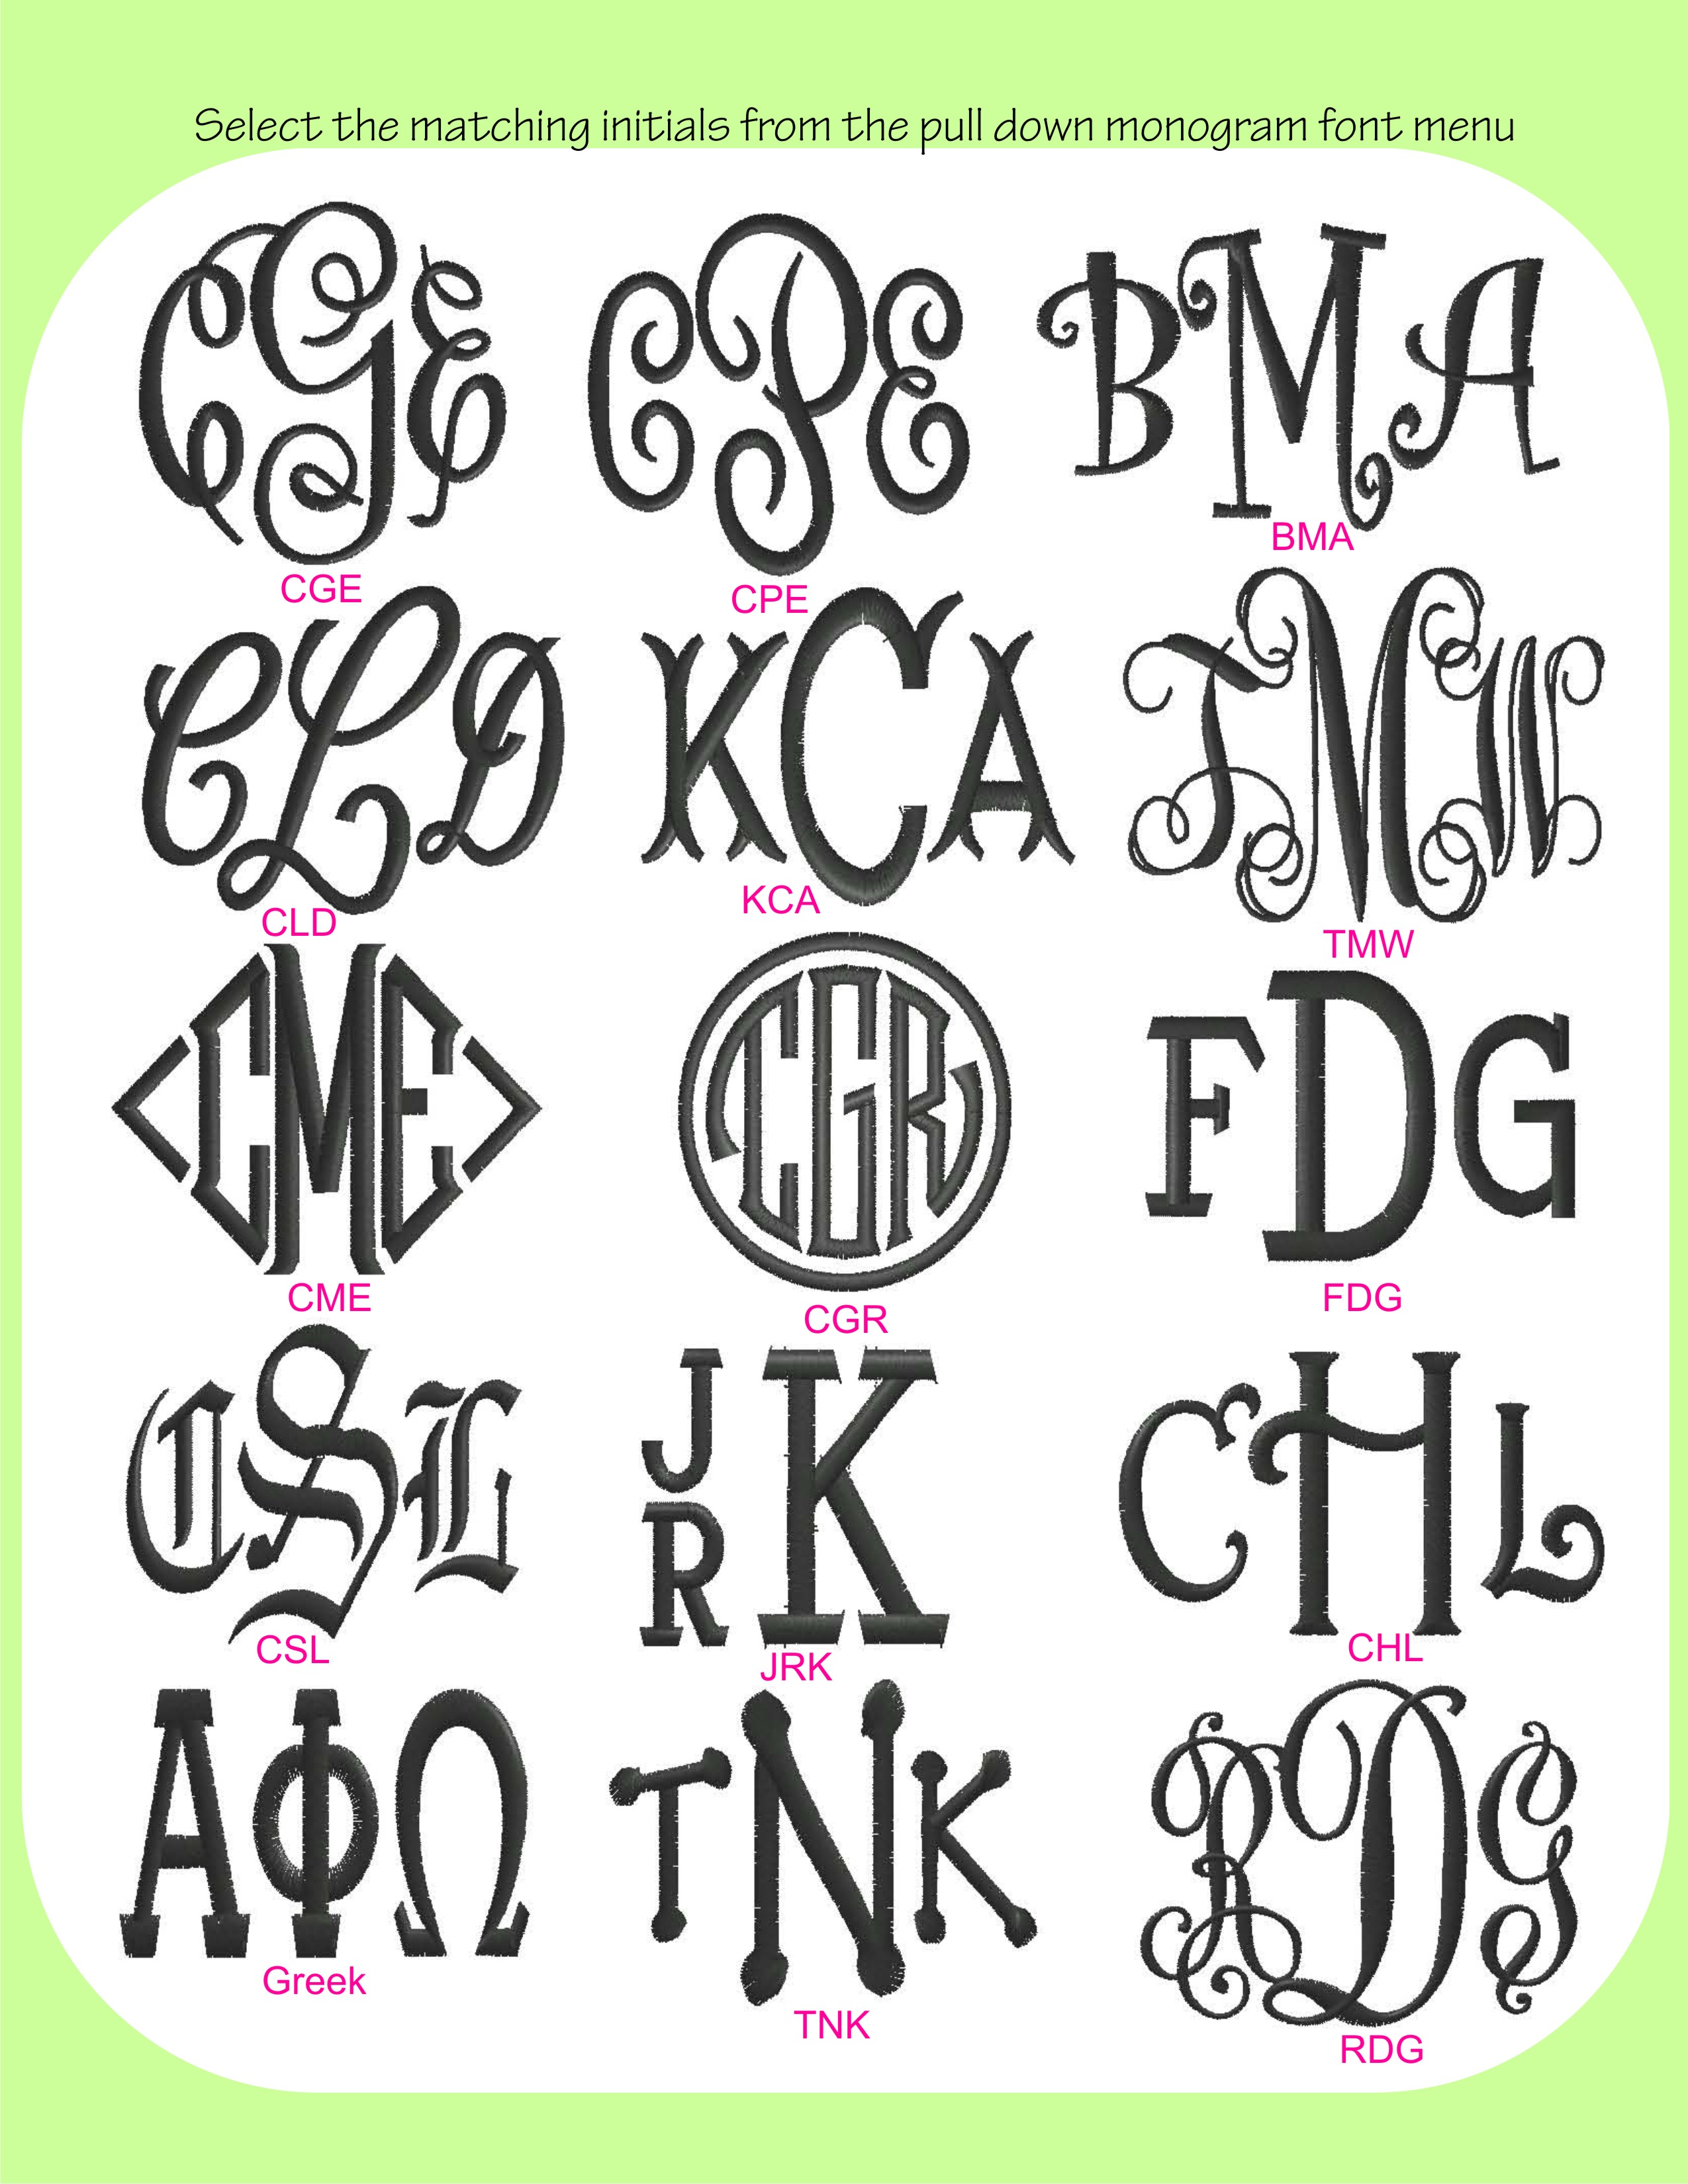 8 Initials Monogram Script Font Images Circle Script Monogram Font 